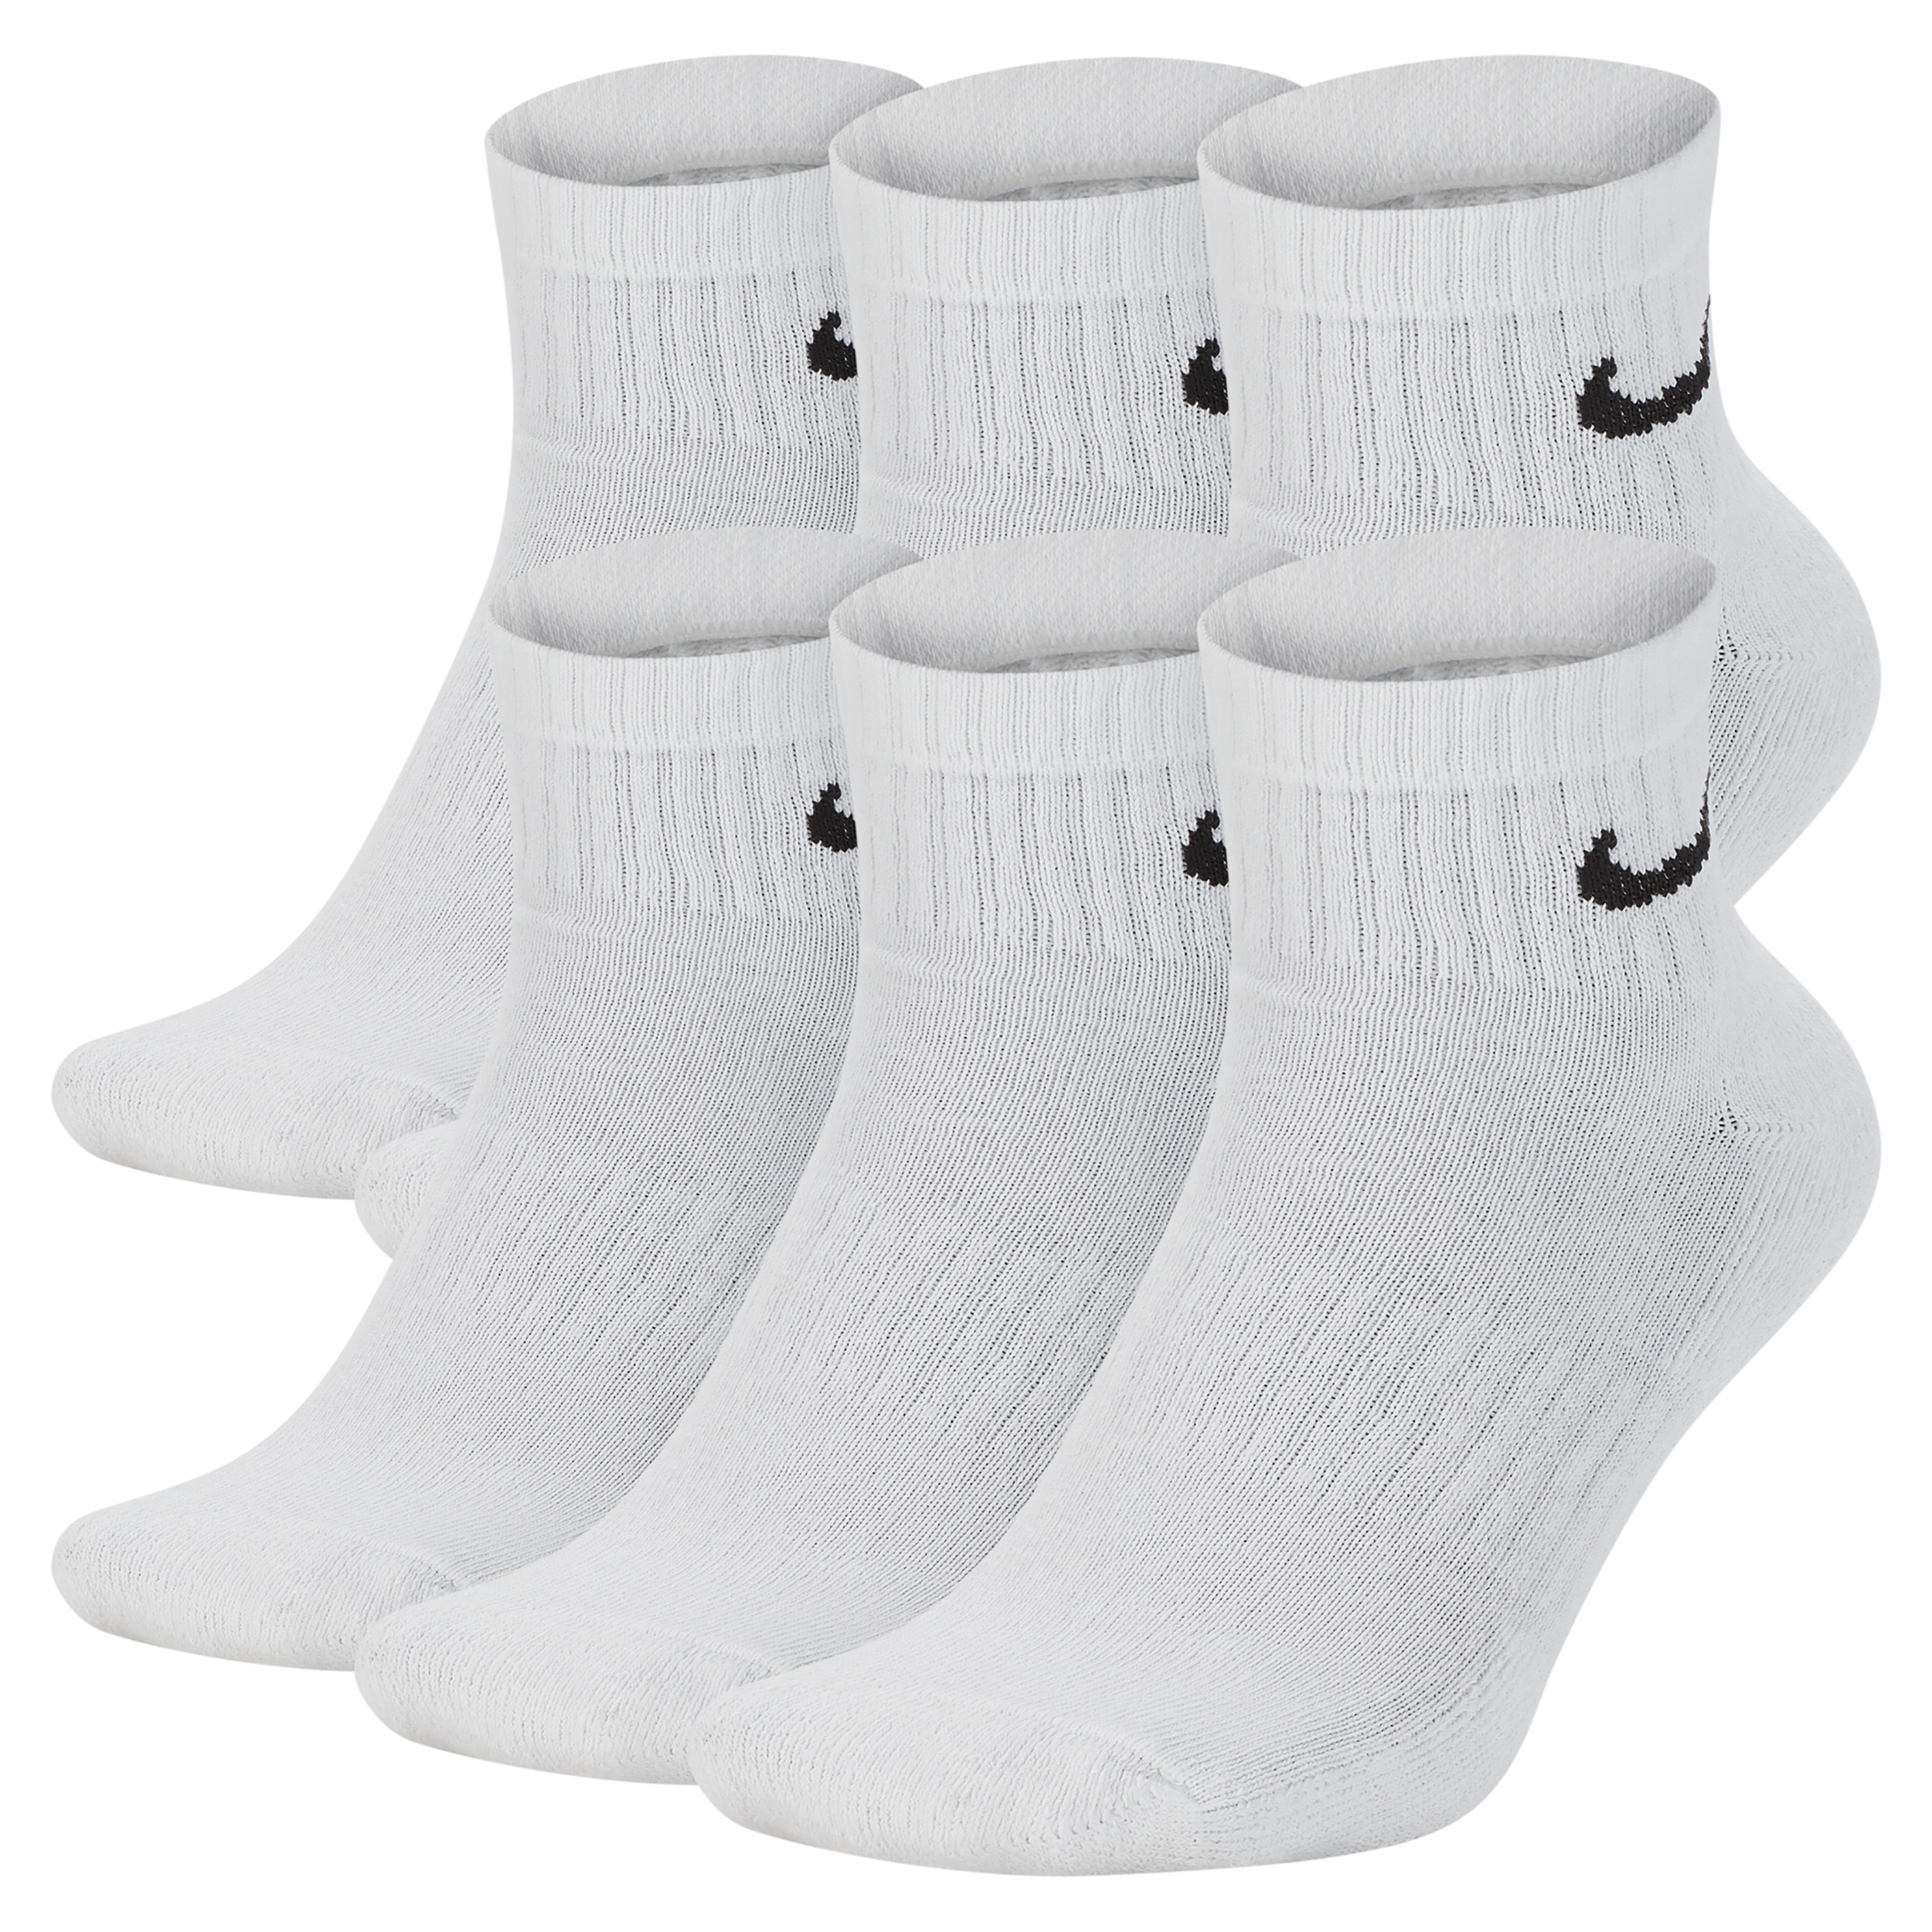 Calze da training alla caviglia Nike Everyday Cushioned (6 paia) - Bianco